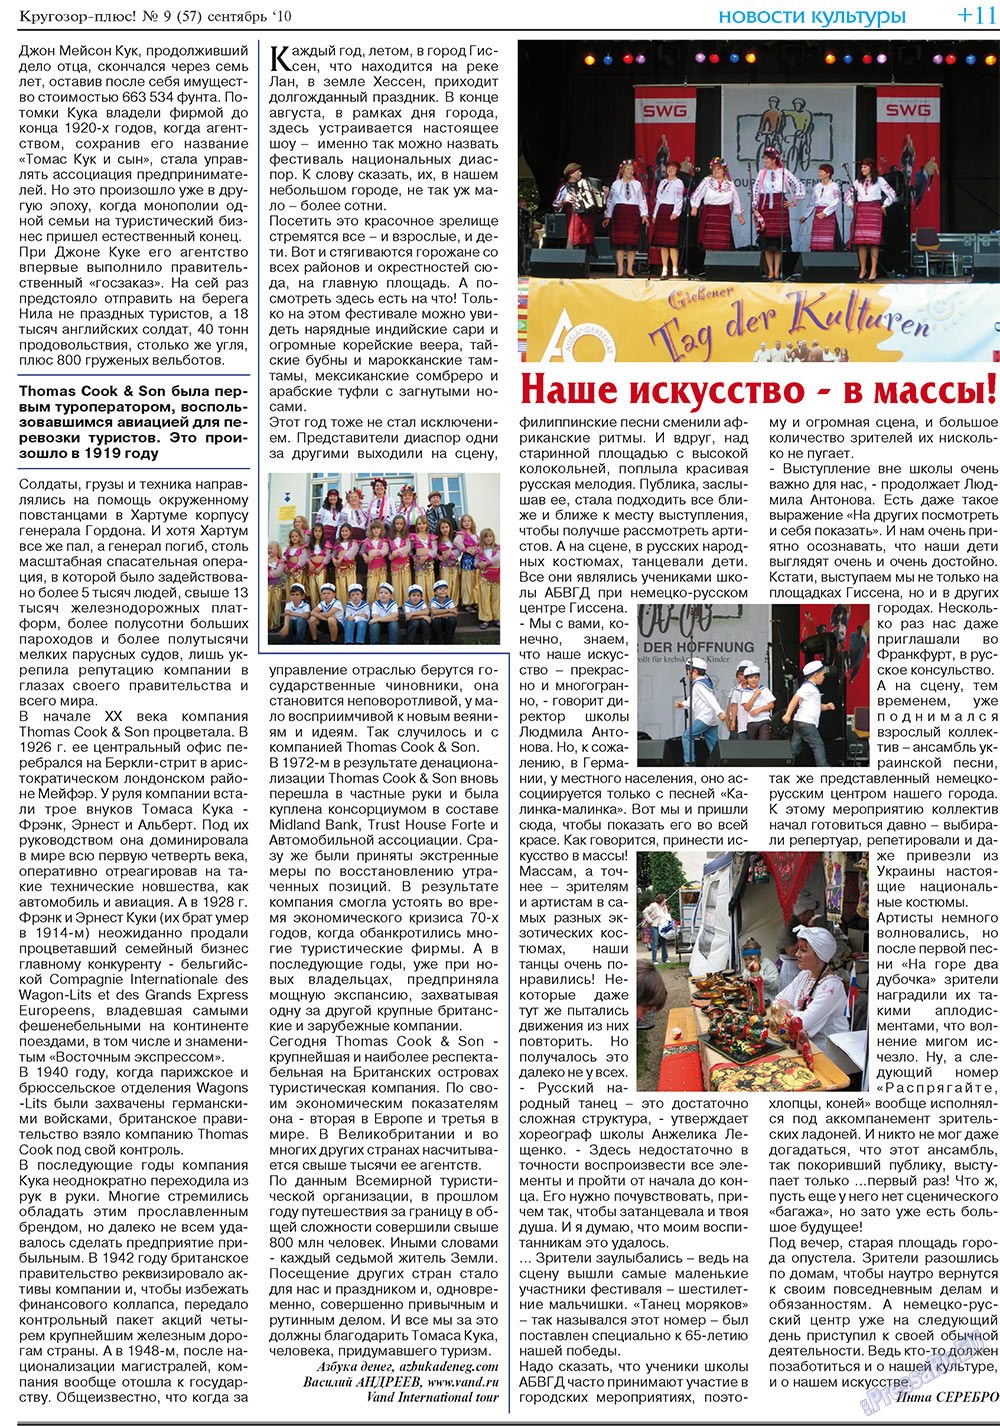 Кругозор плюс!, газета. 2010 №9 стр.27